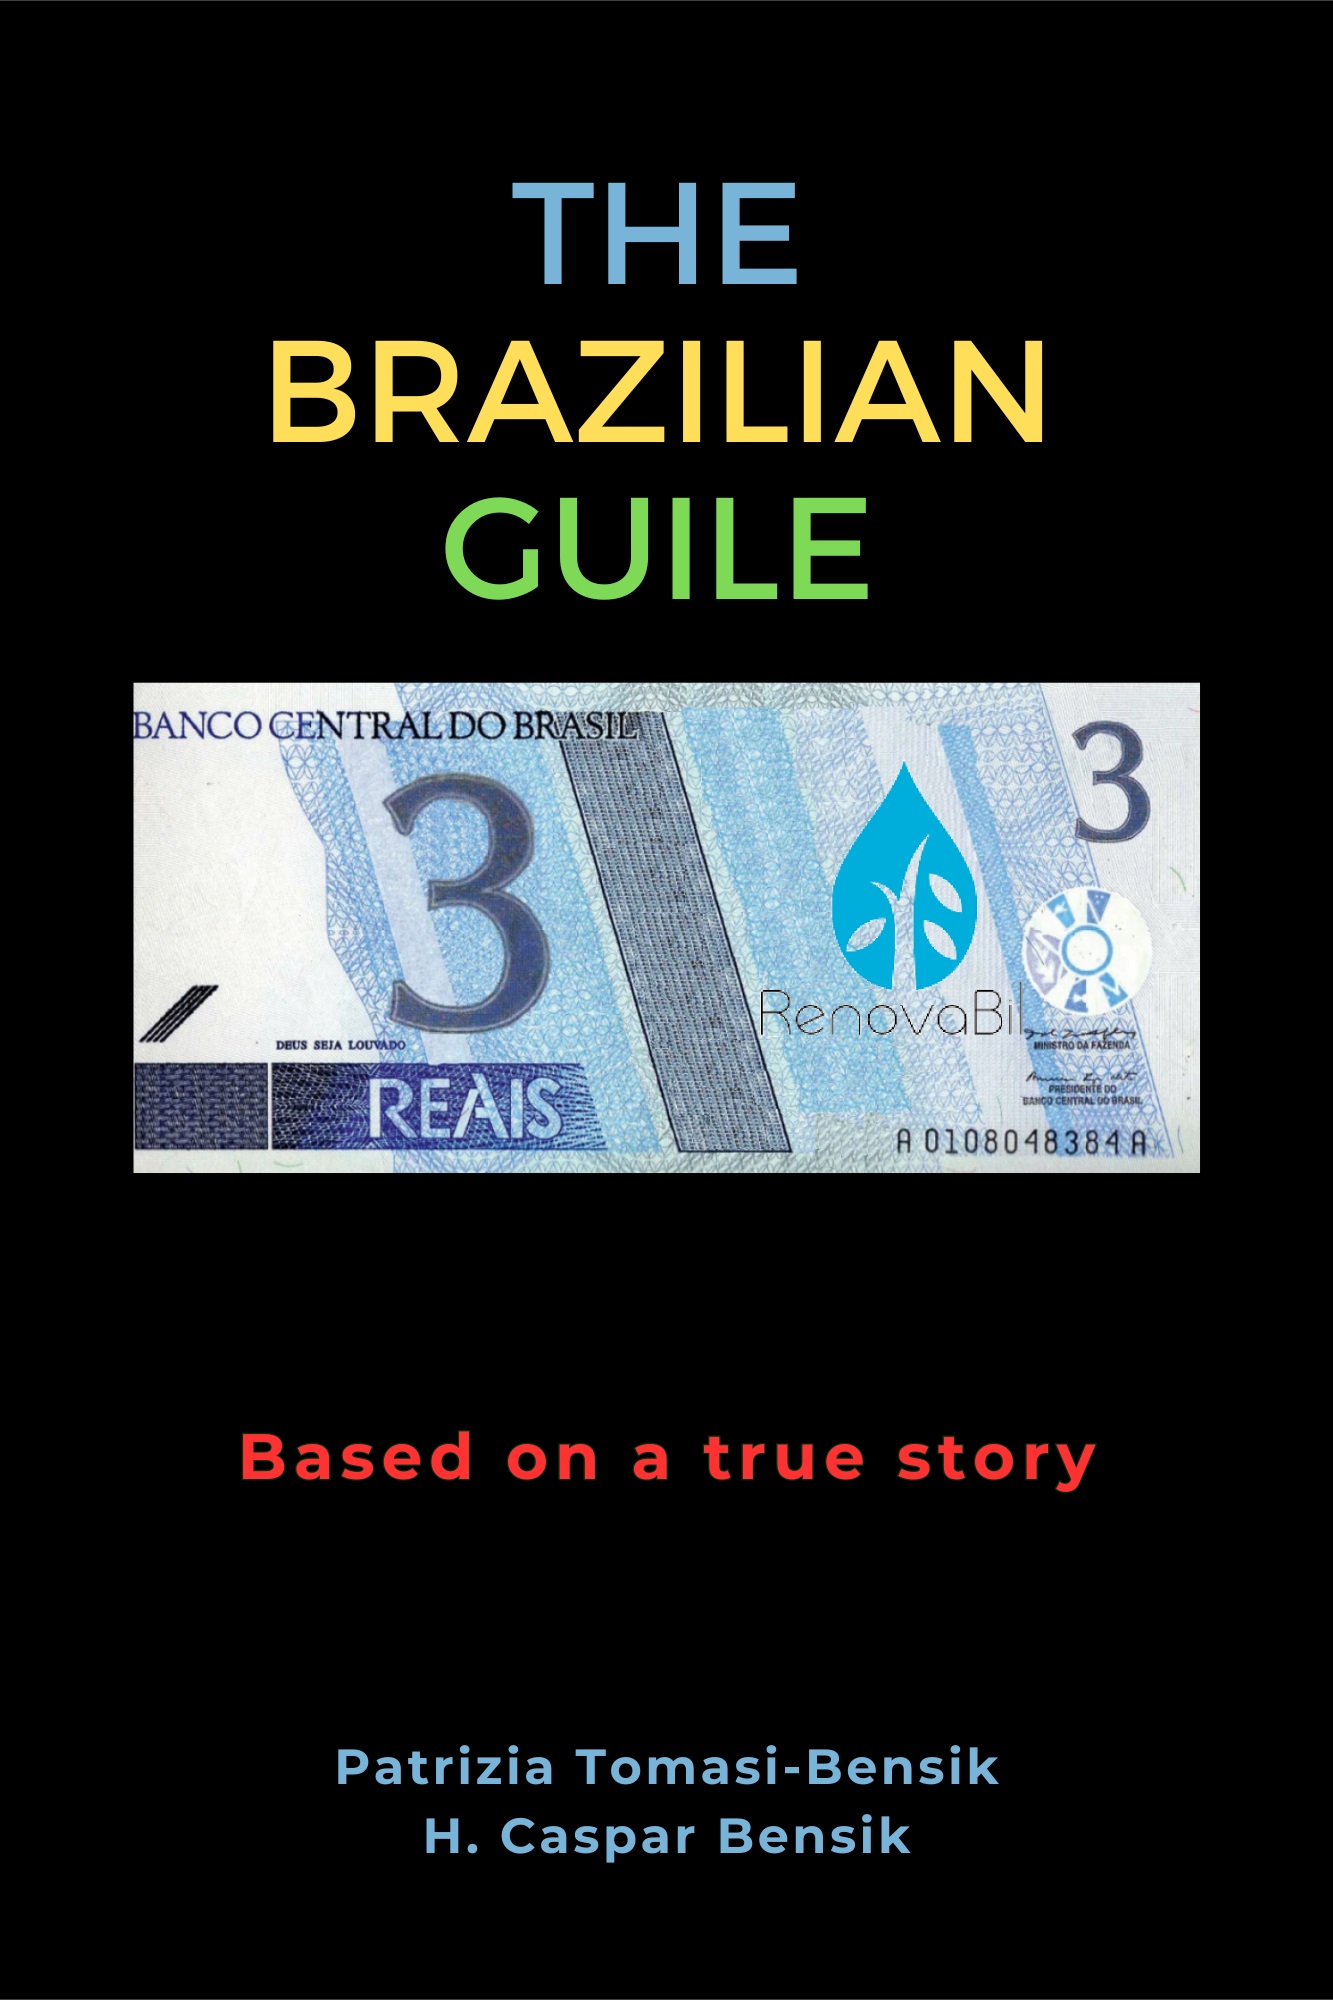 The Brazilian Guile